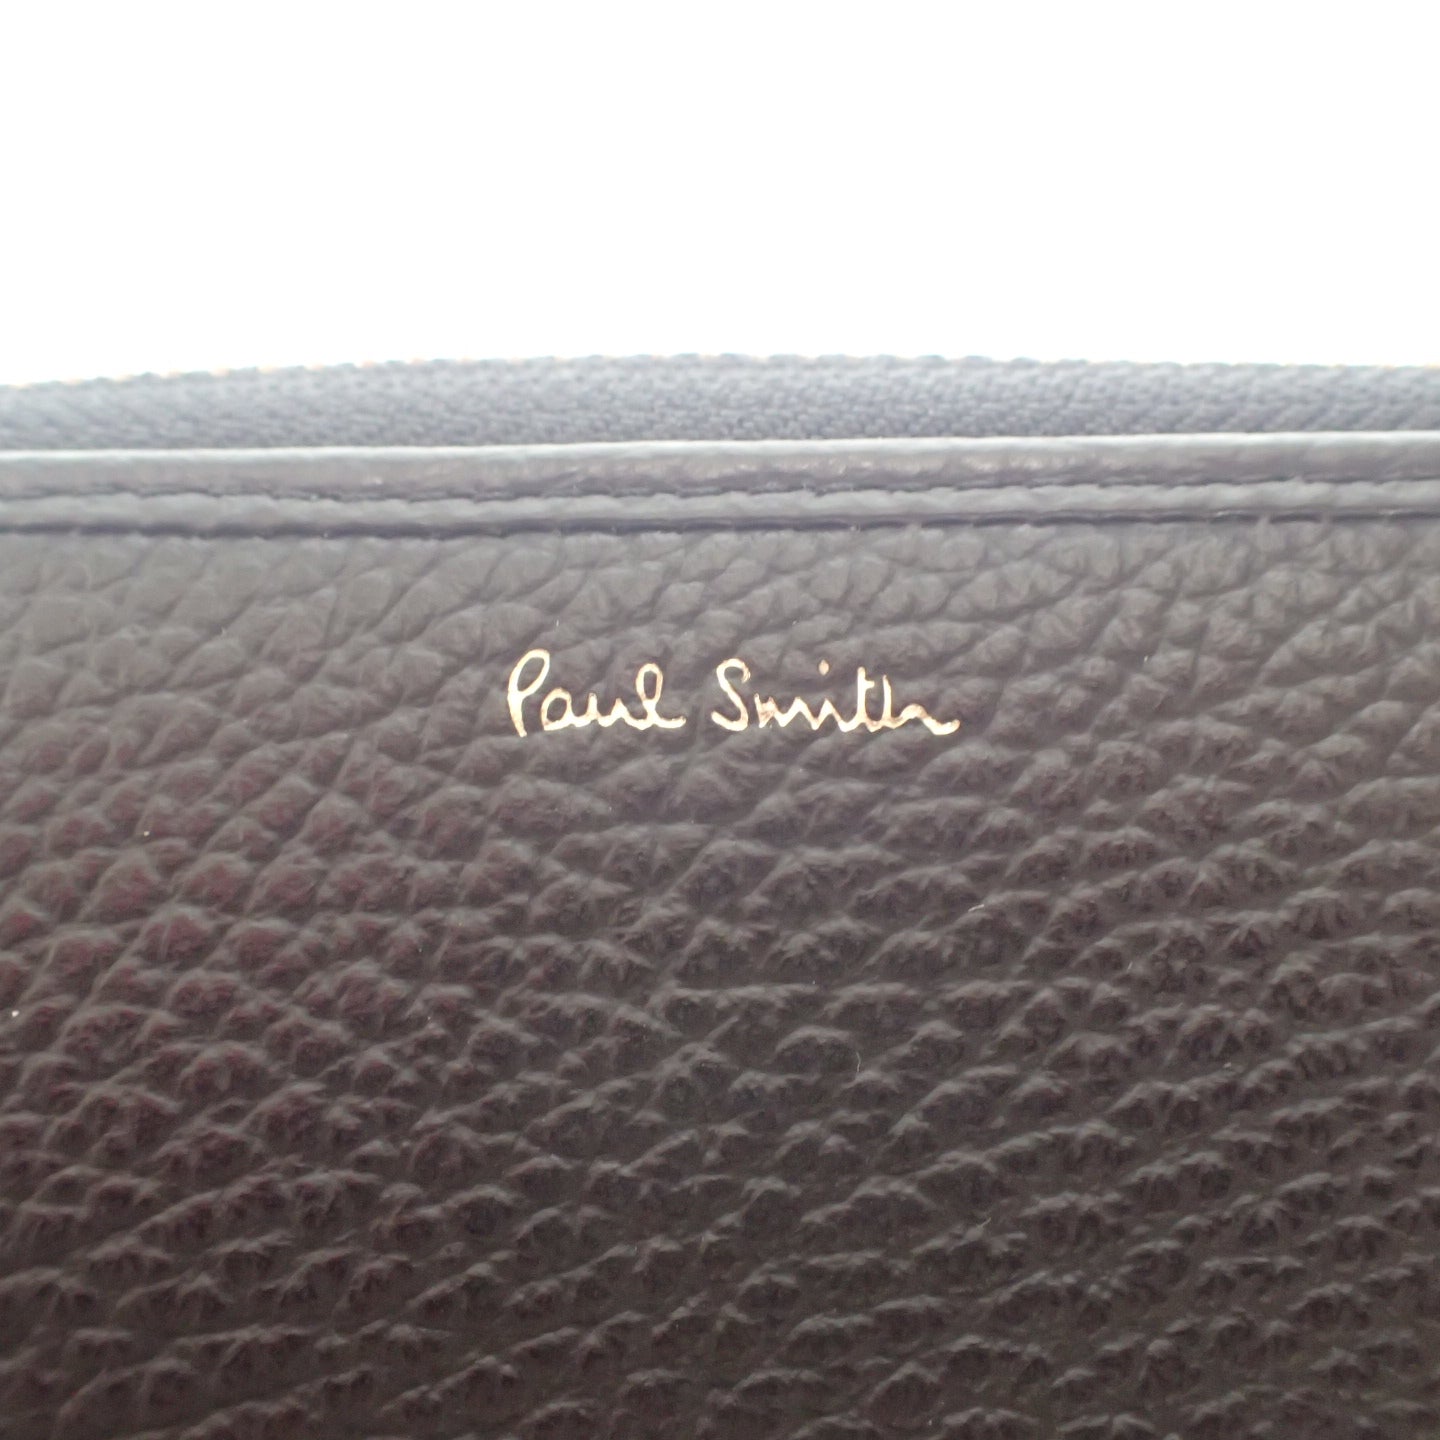 跟新品一样◆Paul Smith 皮革圆形拉链长钱包男士黑色 x 海军蓝 Paul Smith [AFI1] 